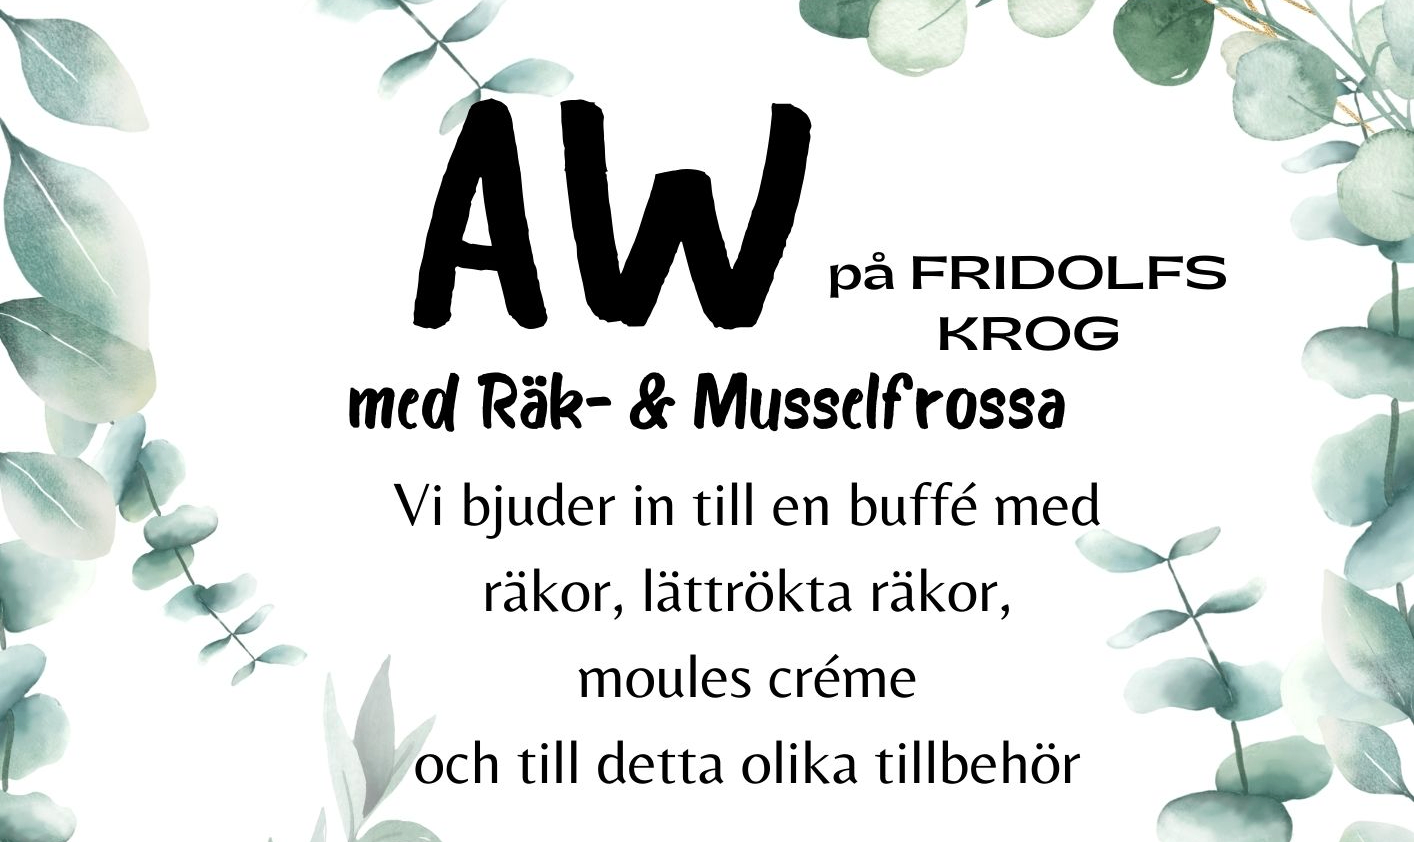 Bildbeskrivning saknas för evenemanget: AW på Fridolfs krog med räk- och musslefrossa